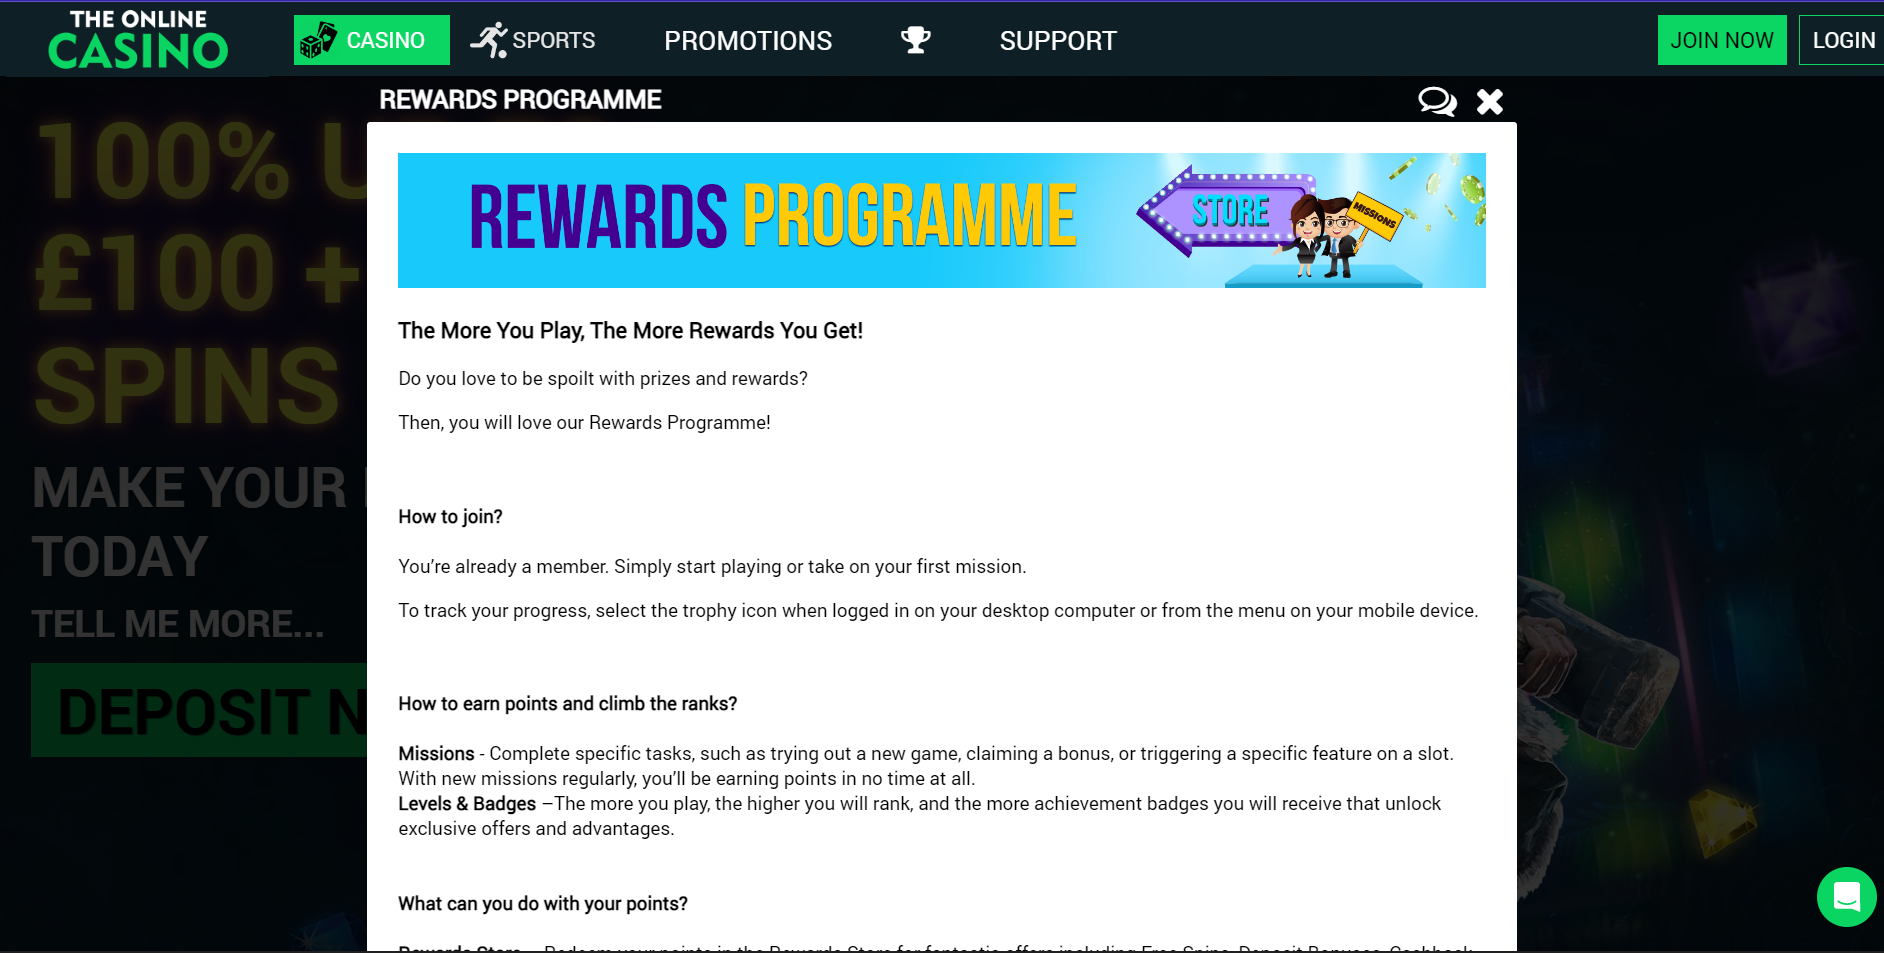 Rewards Programme Information 